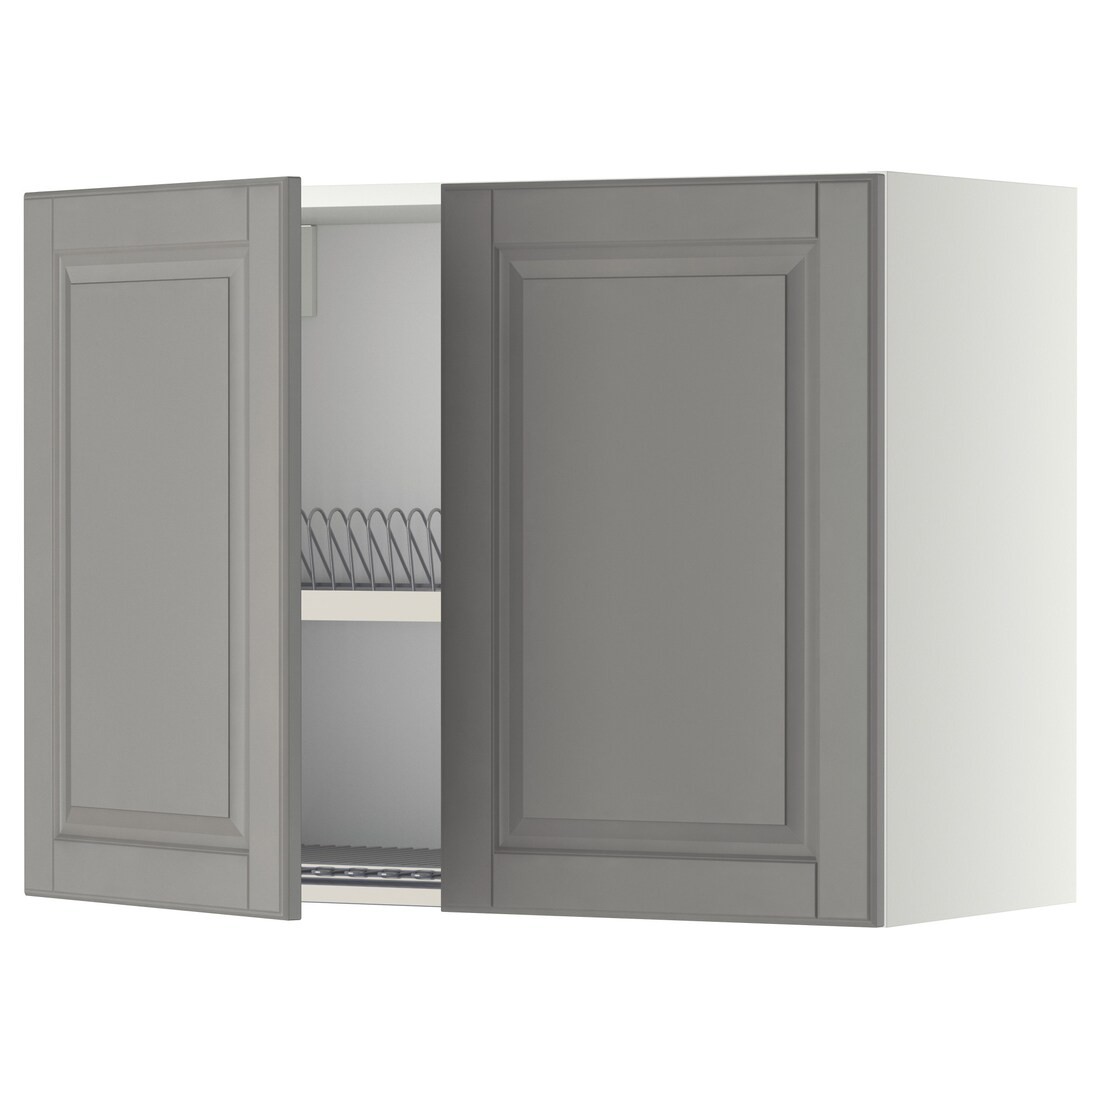 METOD МЕТОД Навесной шкаф с посудной сушилкой / 2 дверцы, белый / Bodbyn серый, 80x60 см